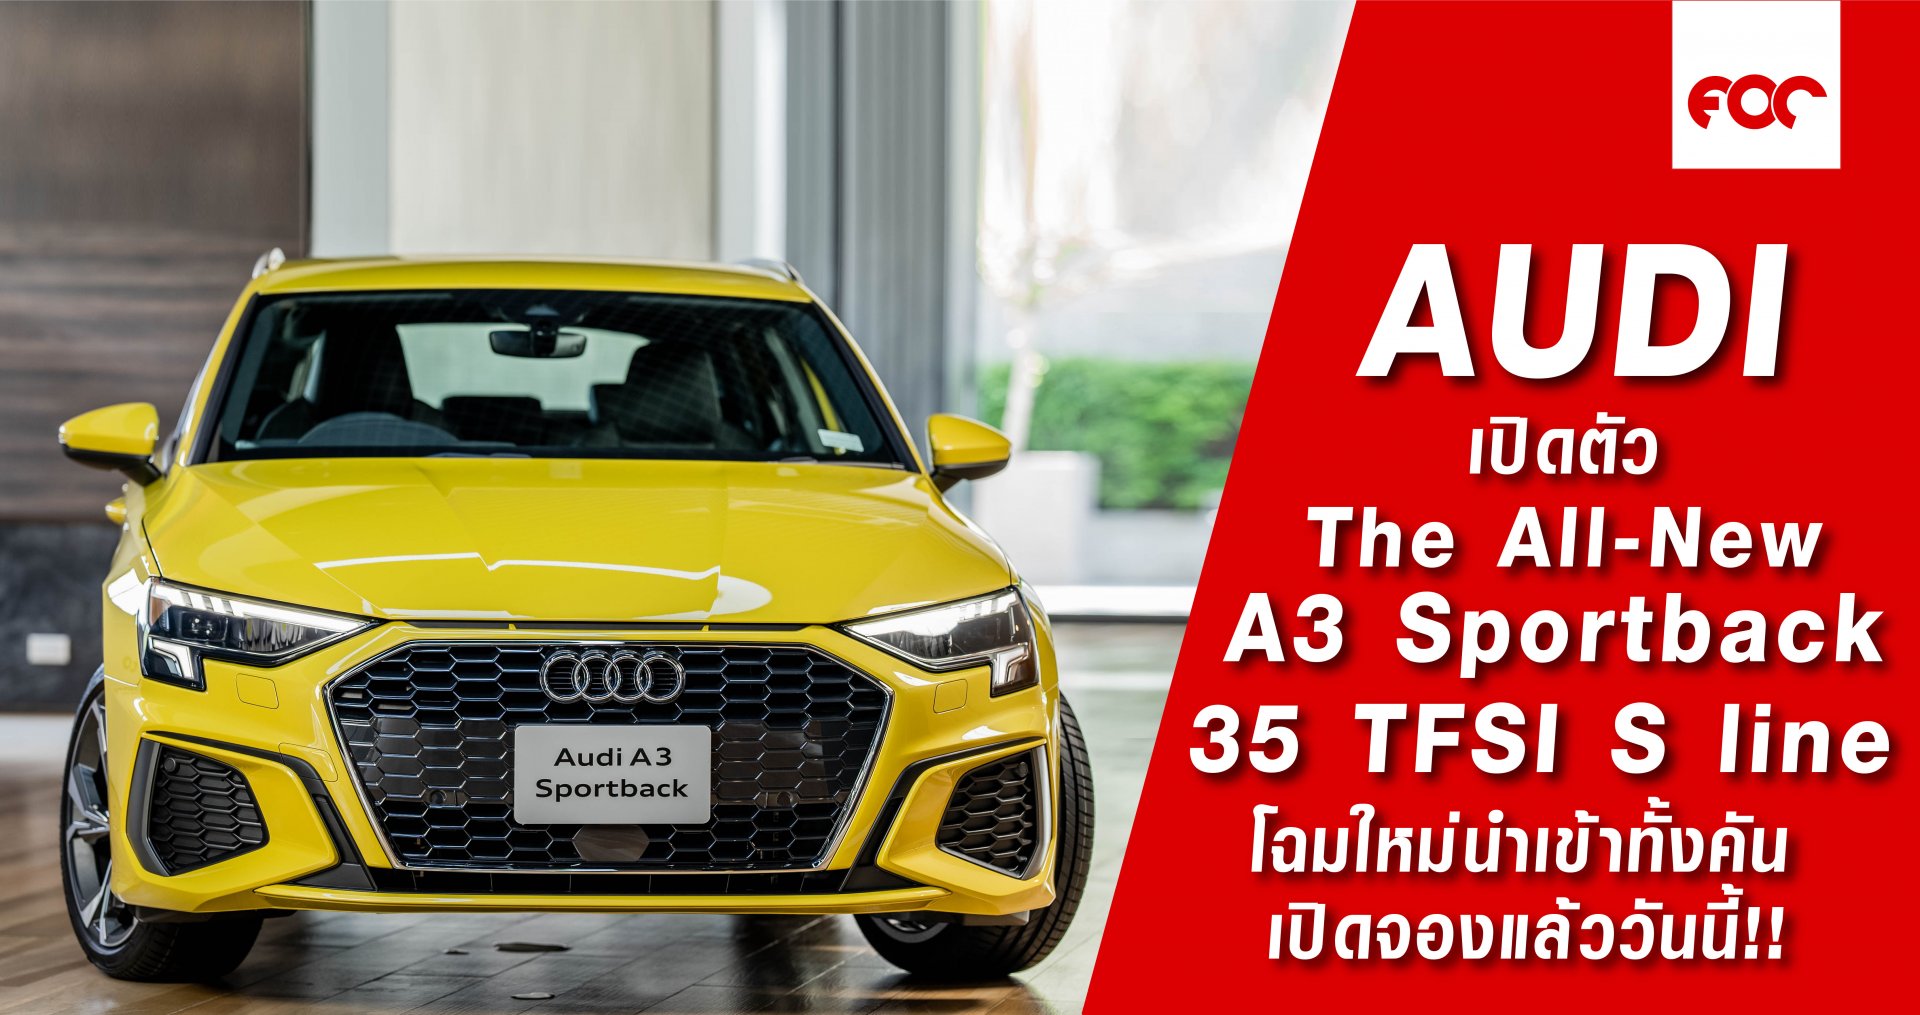 อาวดี้ ประเทศไทย แรงไม่หยุดส่งท้ายปี เปิดตัว The All-New A3 Sportback 35 TFSI S line  โฉมใหม่นำเข้าทั้งคัน เพิ่มทางเลือกให้ลูกค้า ในกลุ่มรถหรูที่ราคาต่ำกว่า 3 ล้านบาท เปิดจองแล้ววันนี้